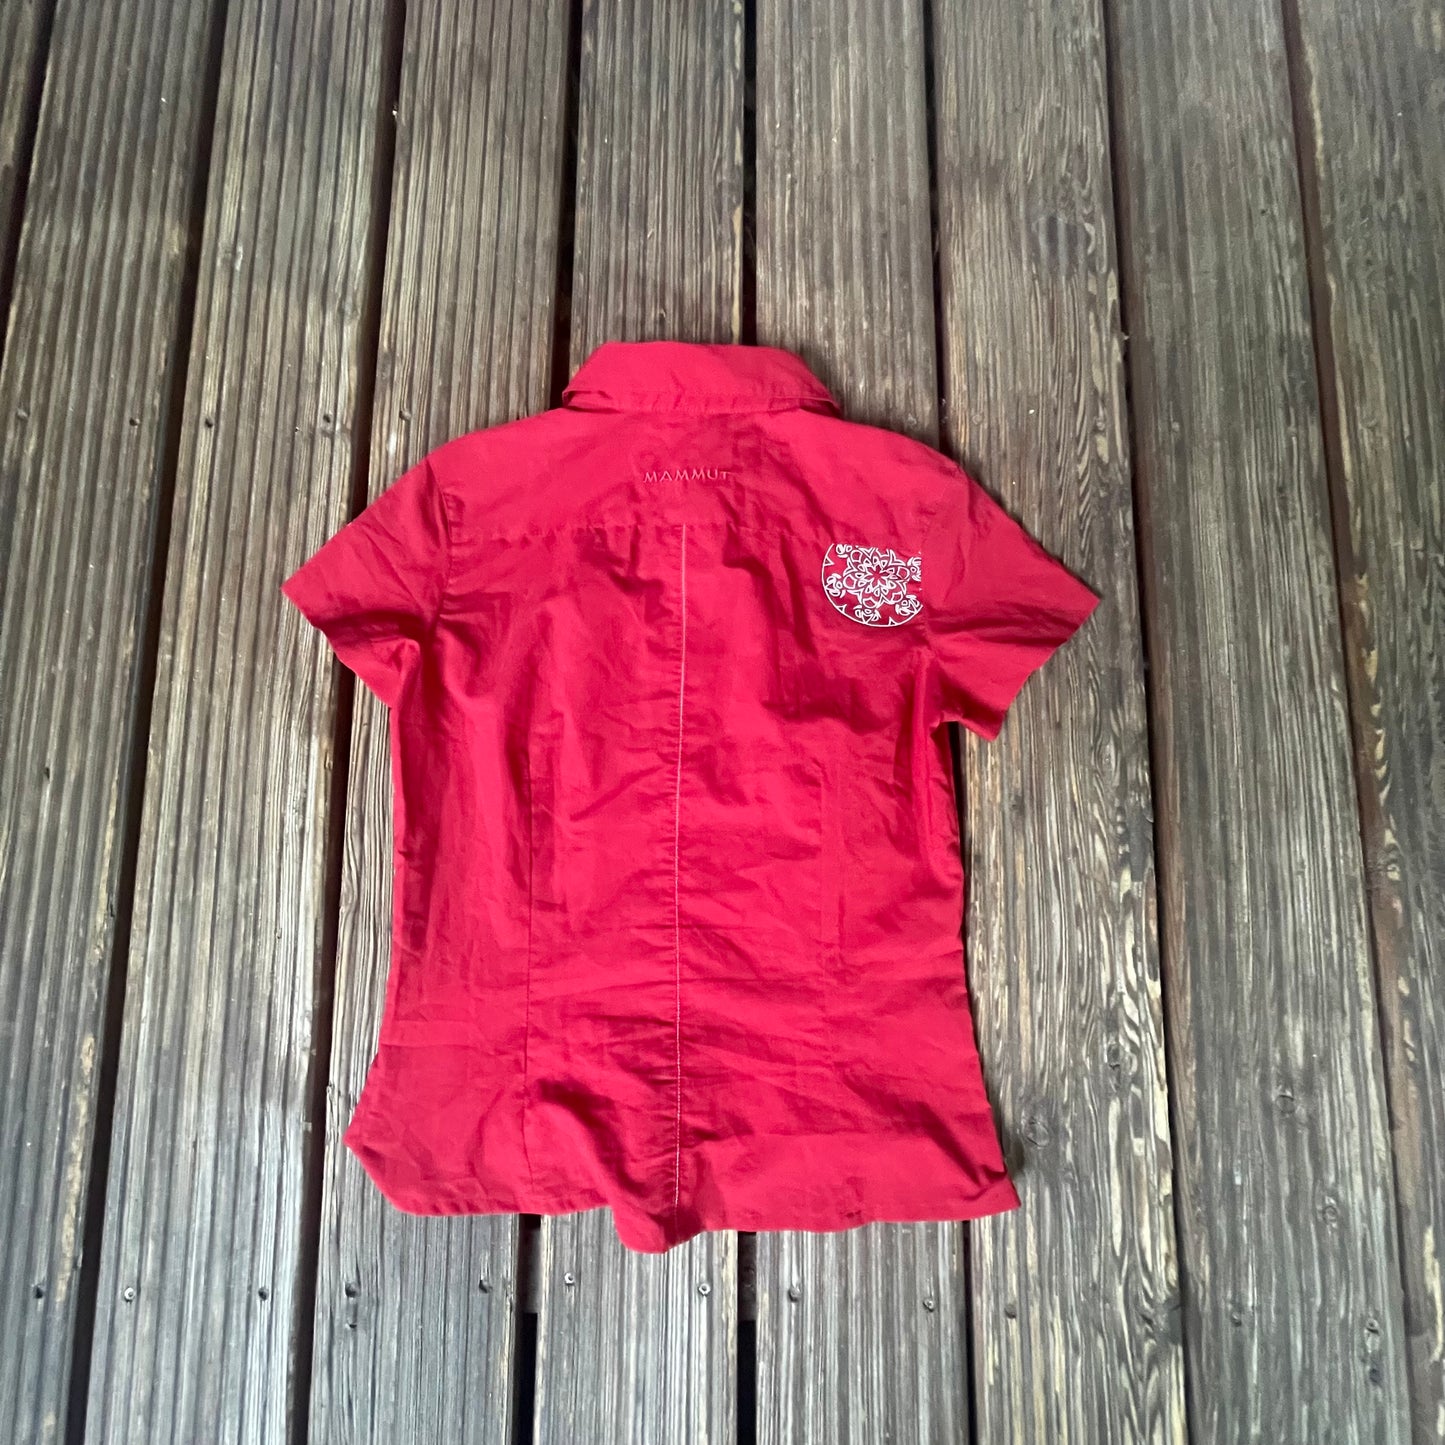 Kurzarm- Hemd von Mammut (XS Damen) rot